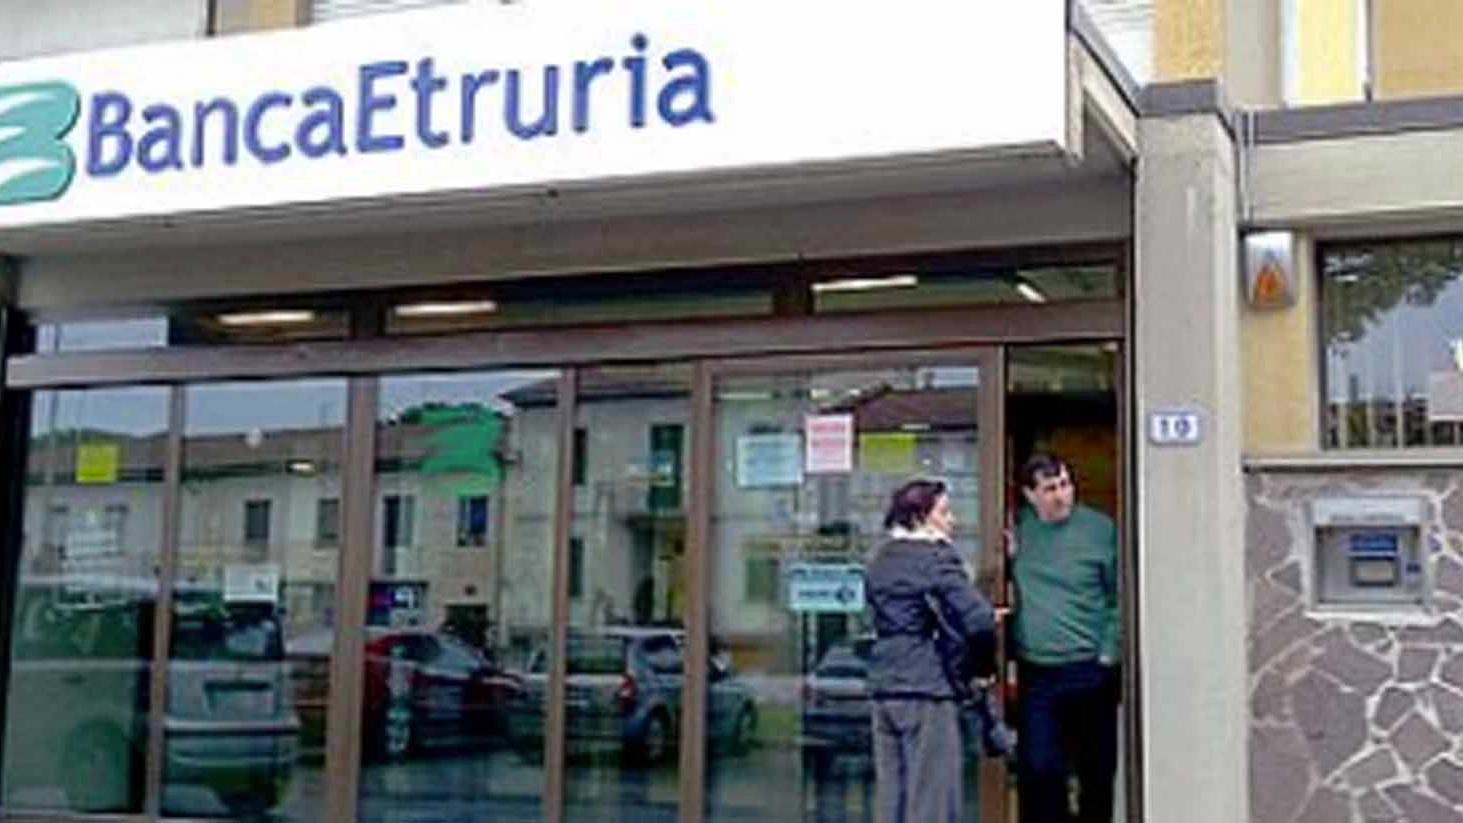 Una filiale di Banca Etruria. Foto Gianni Nucci/Fotocronache Germogli